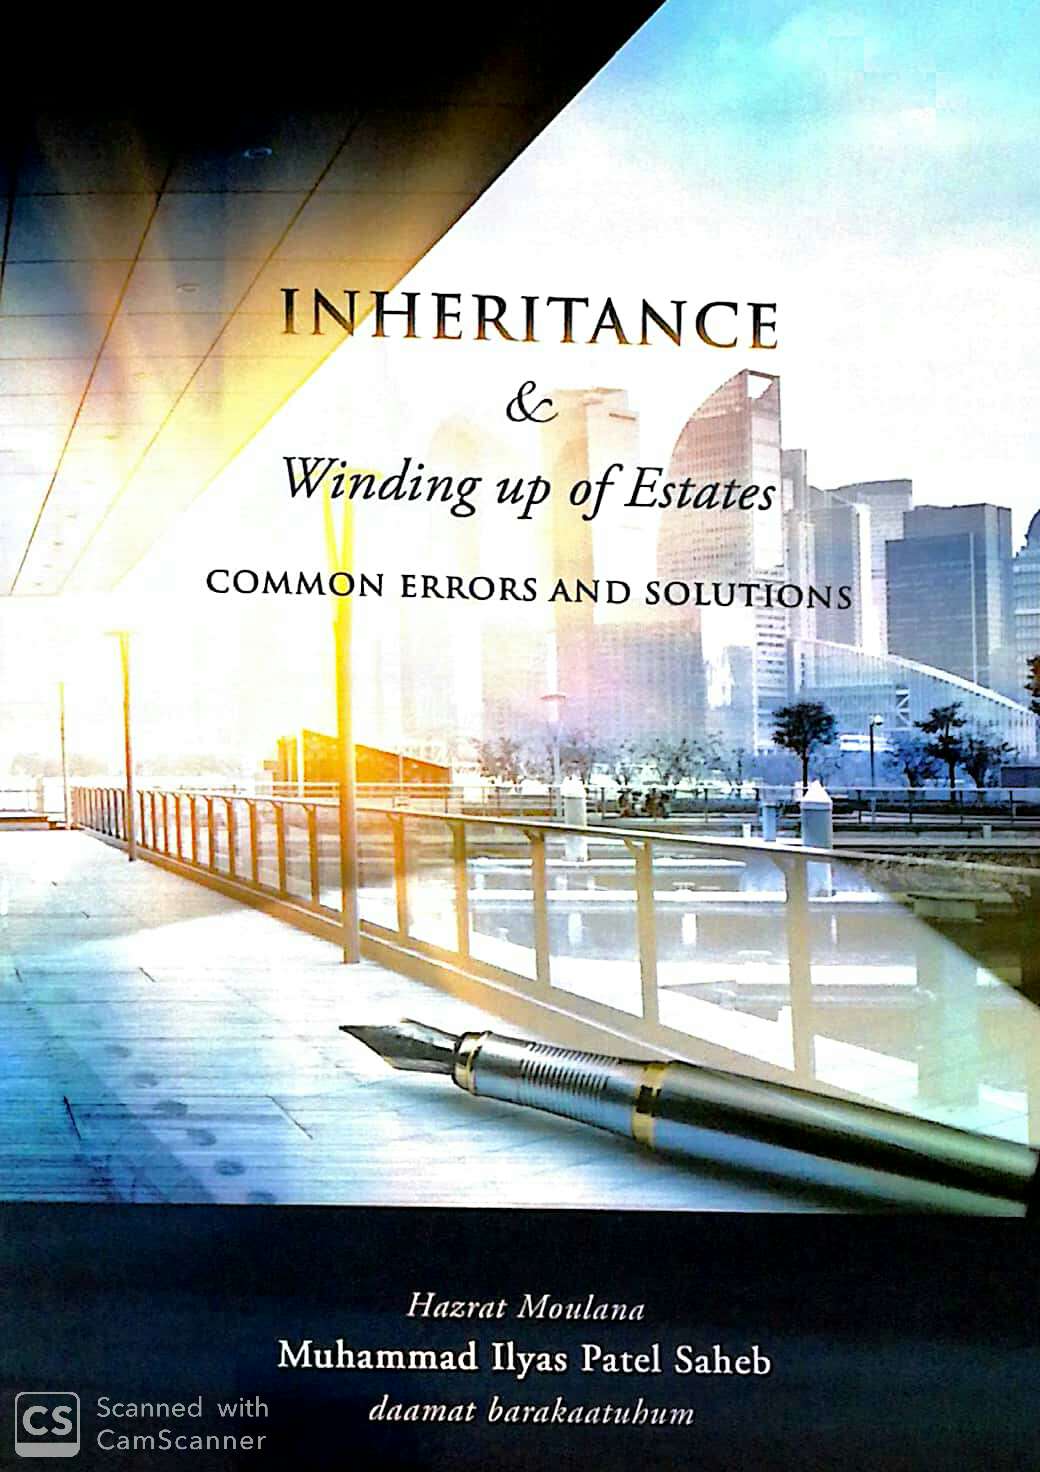 Inheritance & Winding Up of Estates by Hazrat Moulana Muhammed Ilyas Patel Saheb